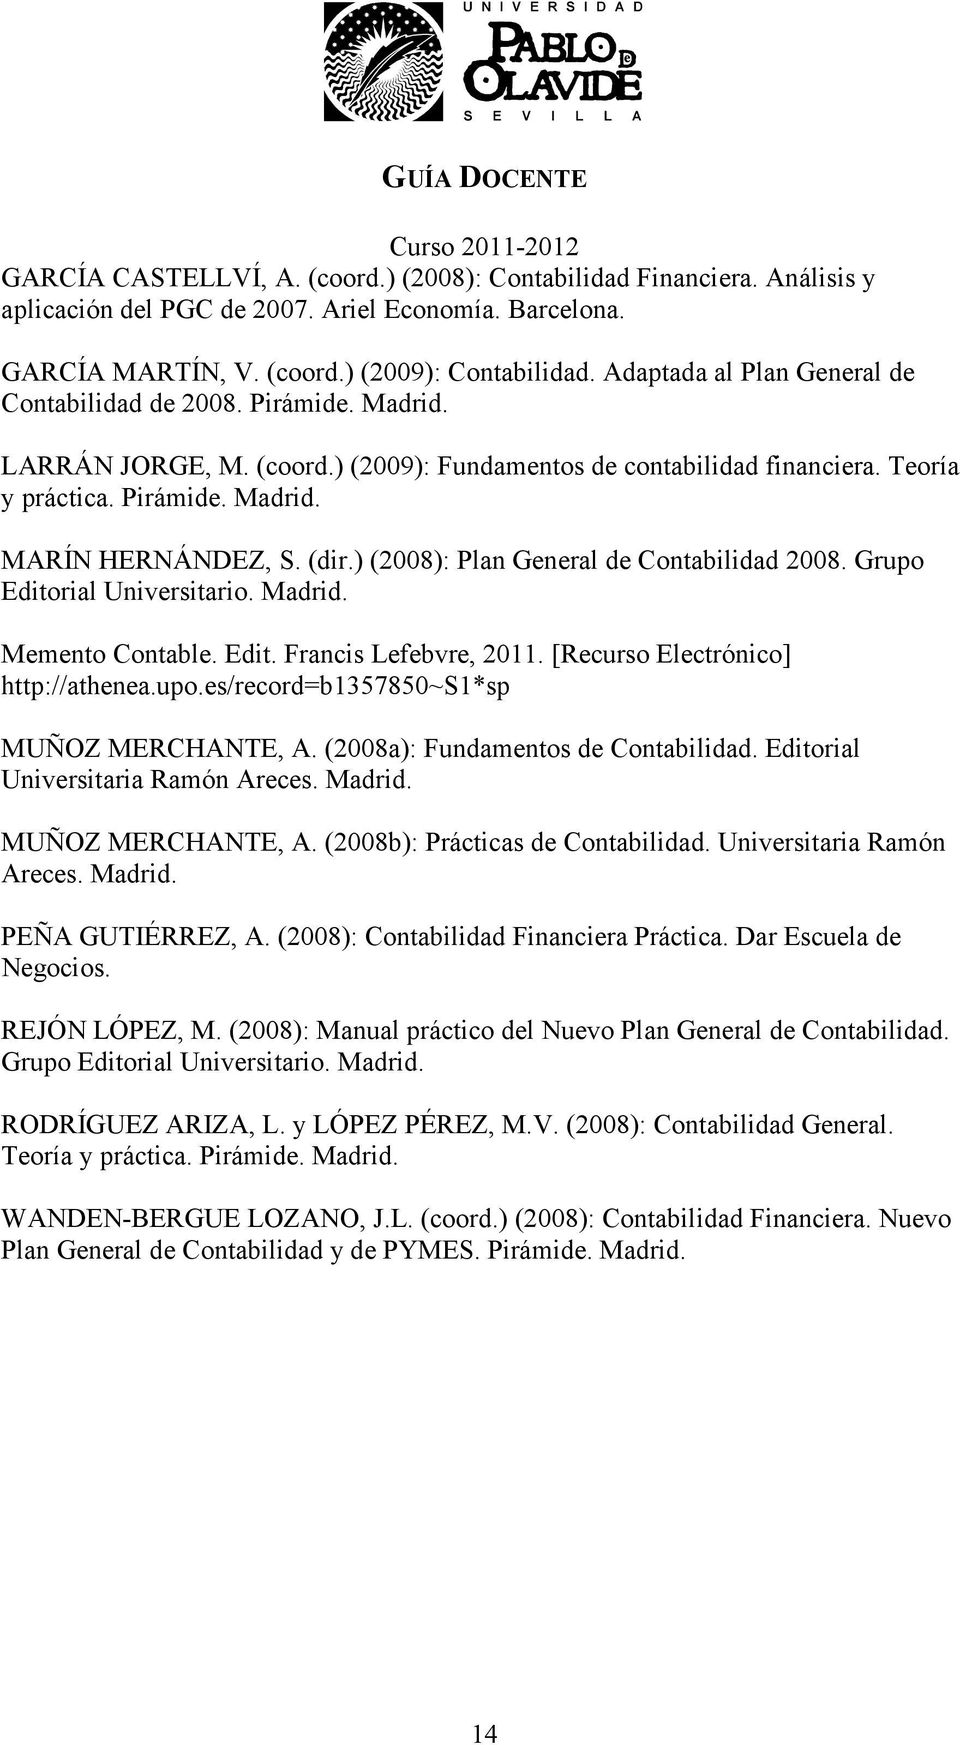 (dir.) (2008): Plan General de Contabilidad 2008. Grupo Editorial Universitario. Madrid. Memento Contable. Edit. Francis Lefebvre, 2011. [Recurso Electrónico] http://athenea.upo.es/record=b1357850~s1*sp MUÑOZ MERCHANTE, A.